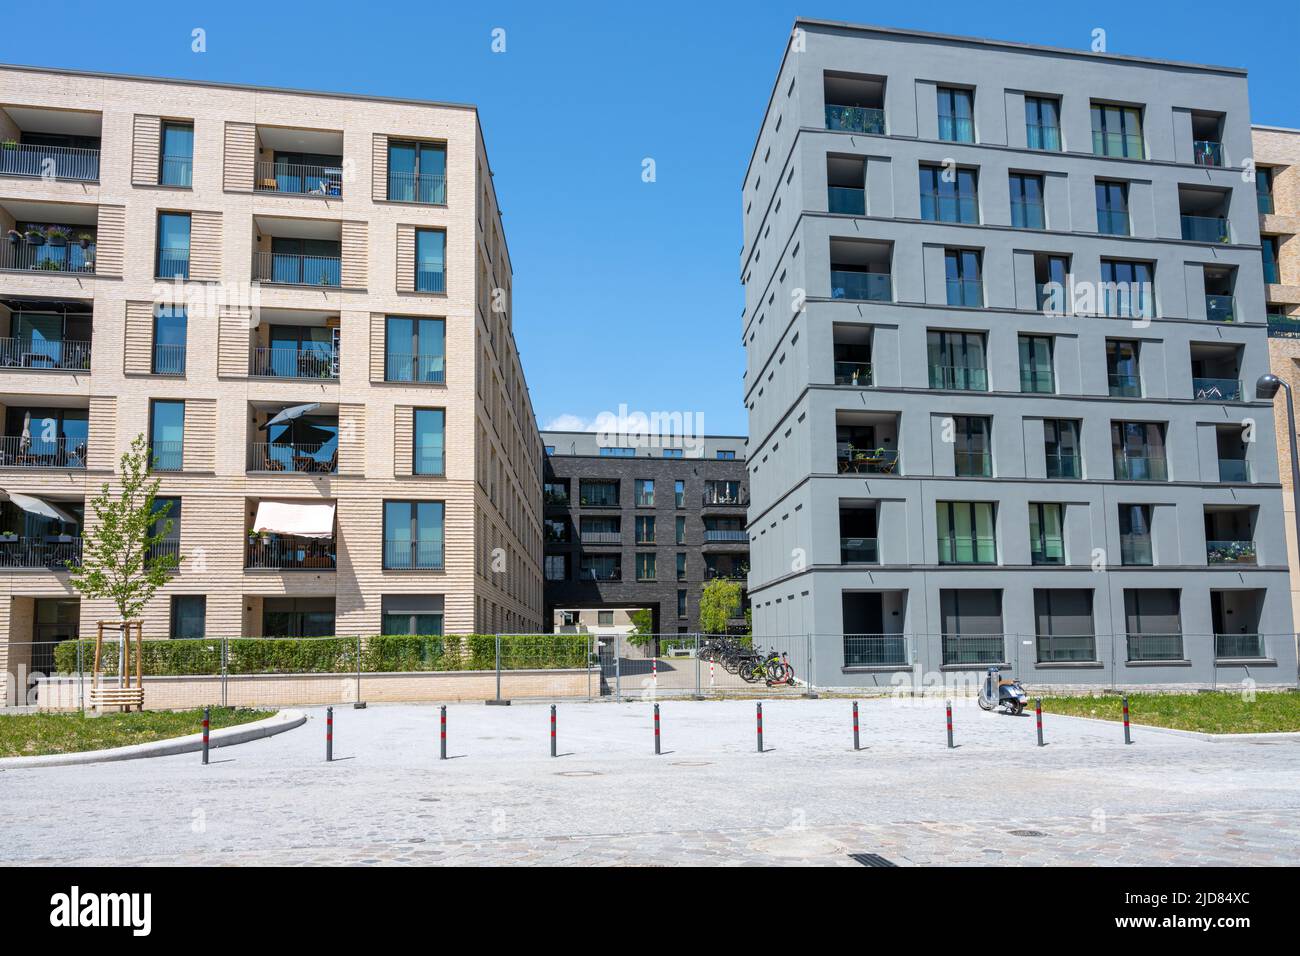 Modernos edificios de apartamentos en una zona de urbanización en Berlín, Alemania Foto de stock